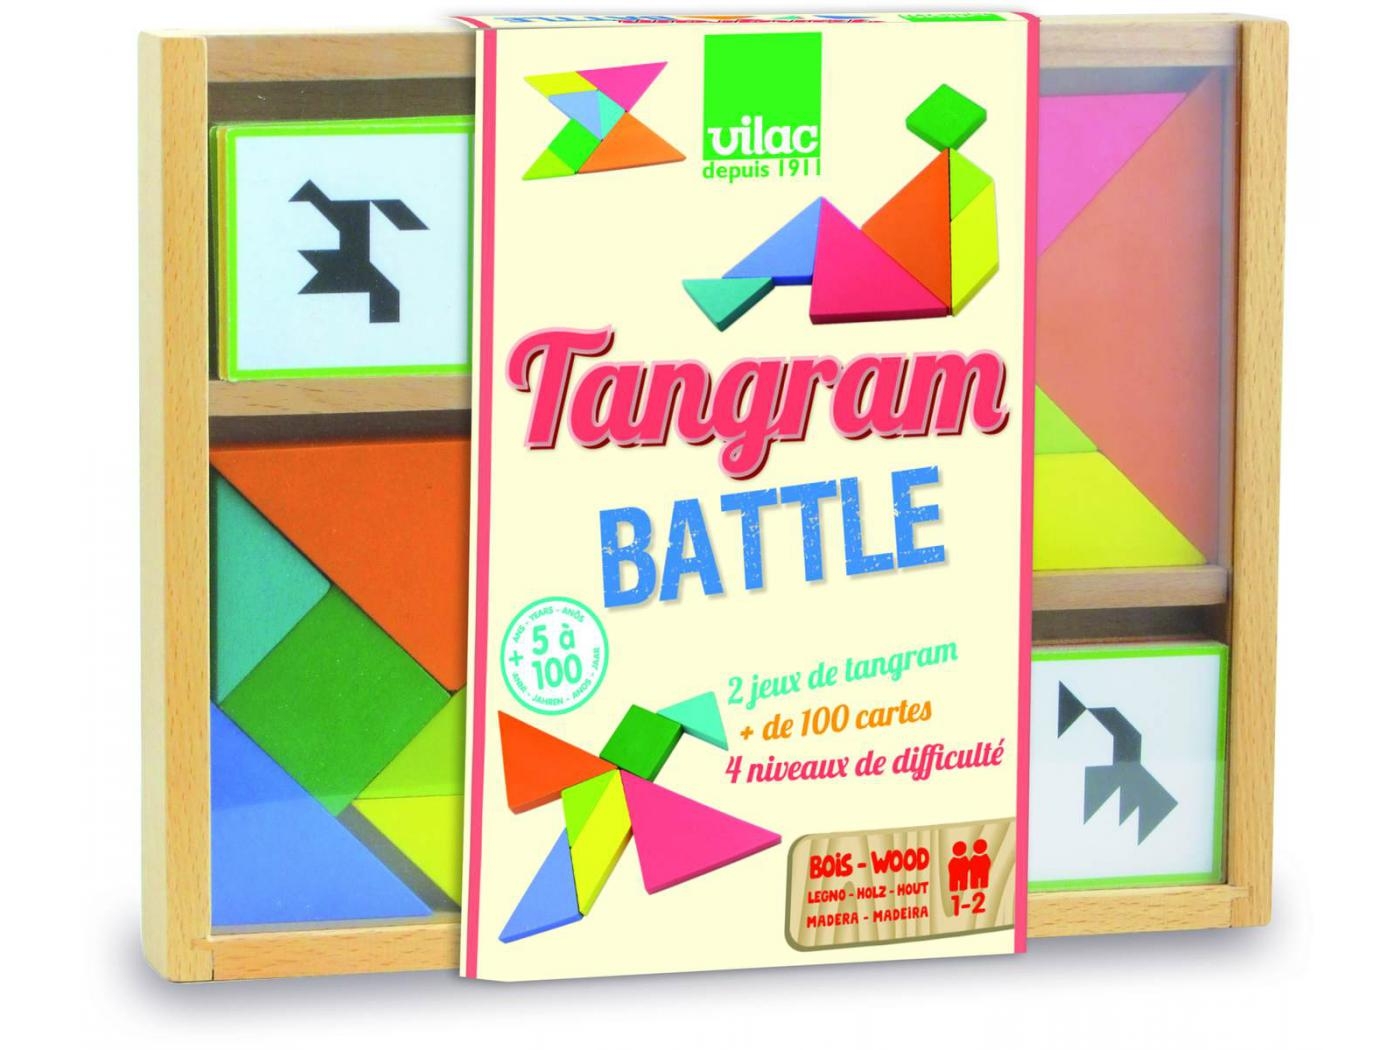 Tangram battle